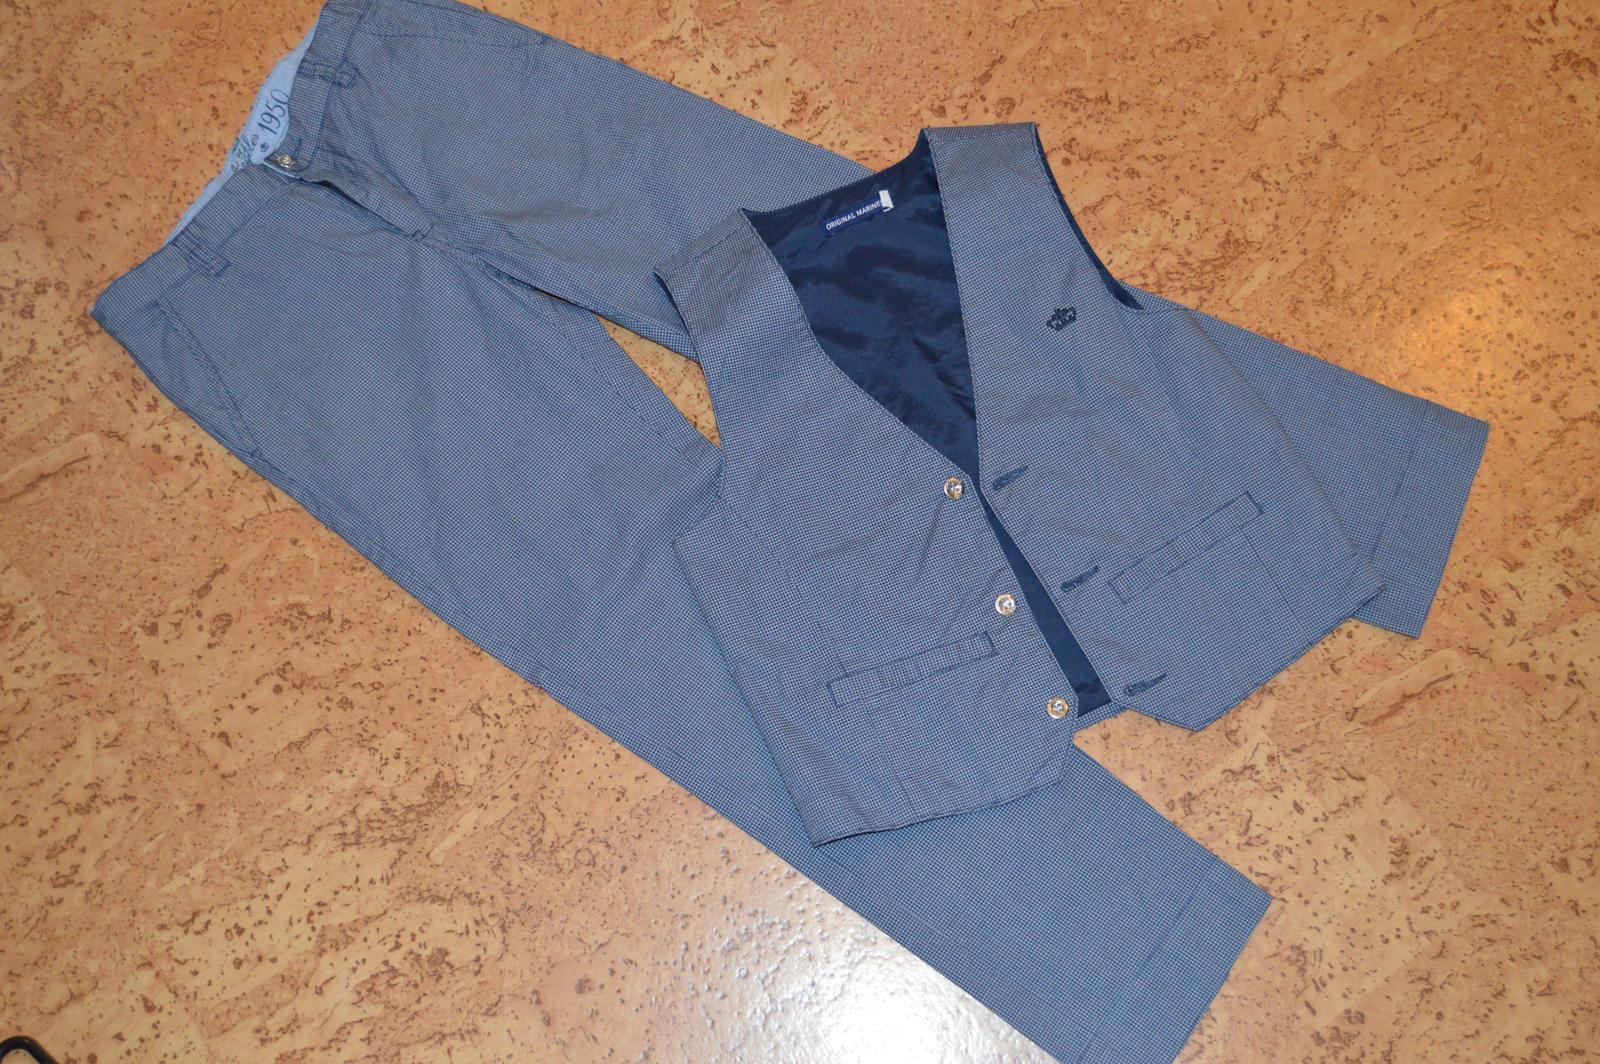 Chlapecké kalhoty s vestou - Obrázek č. 1